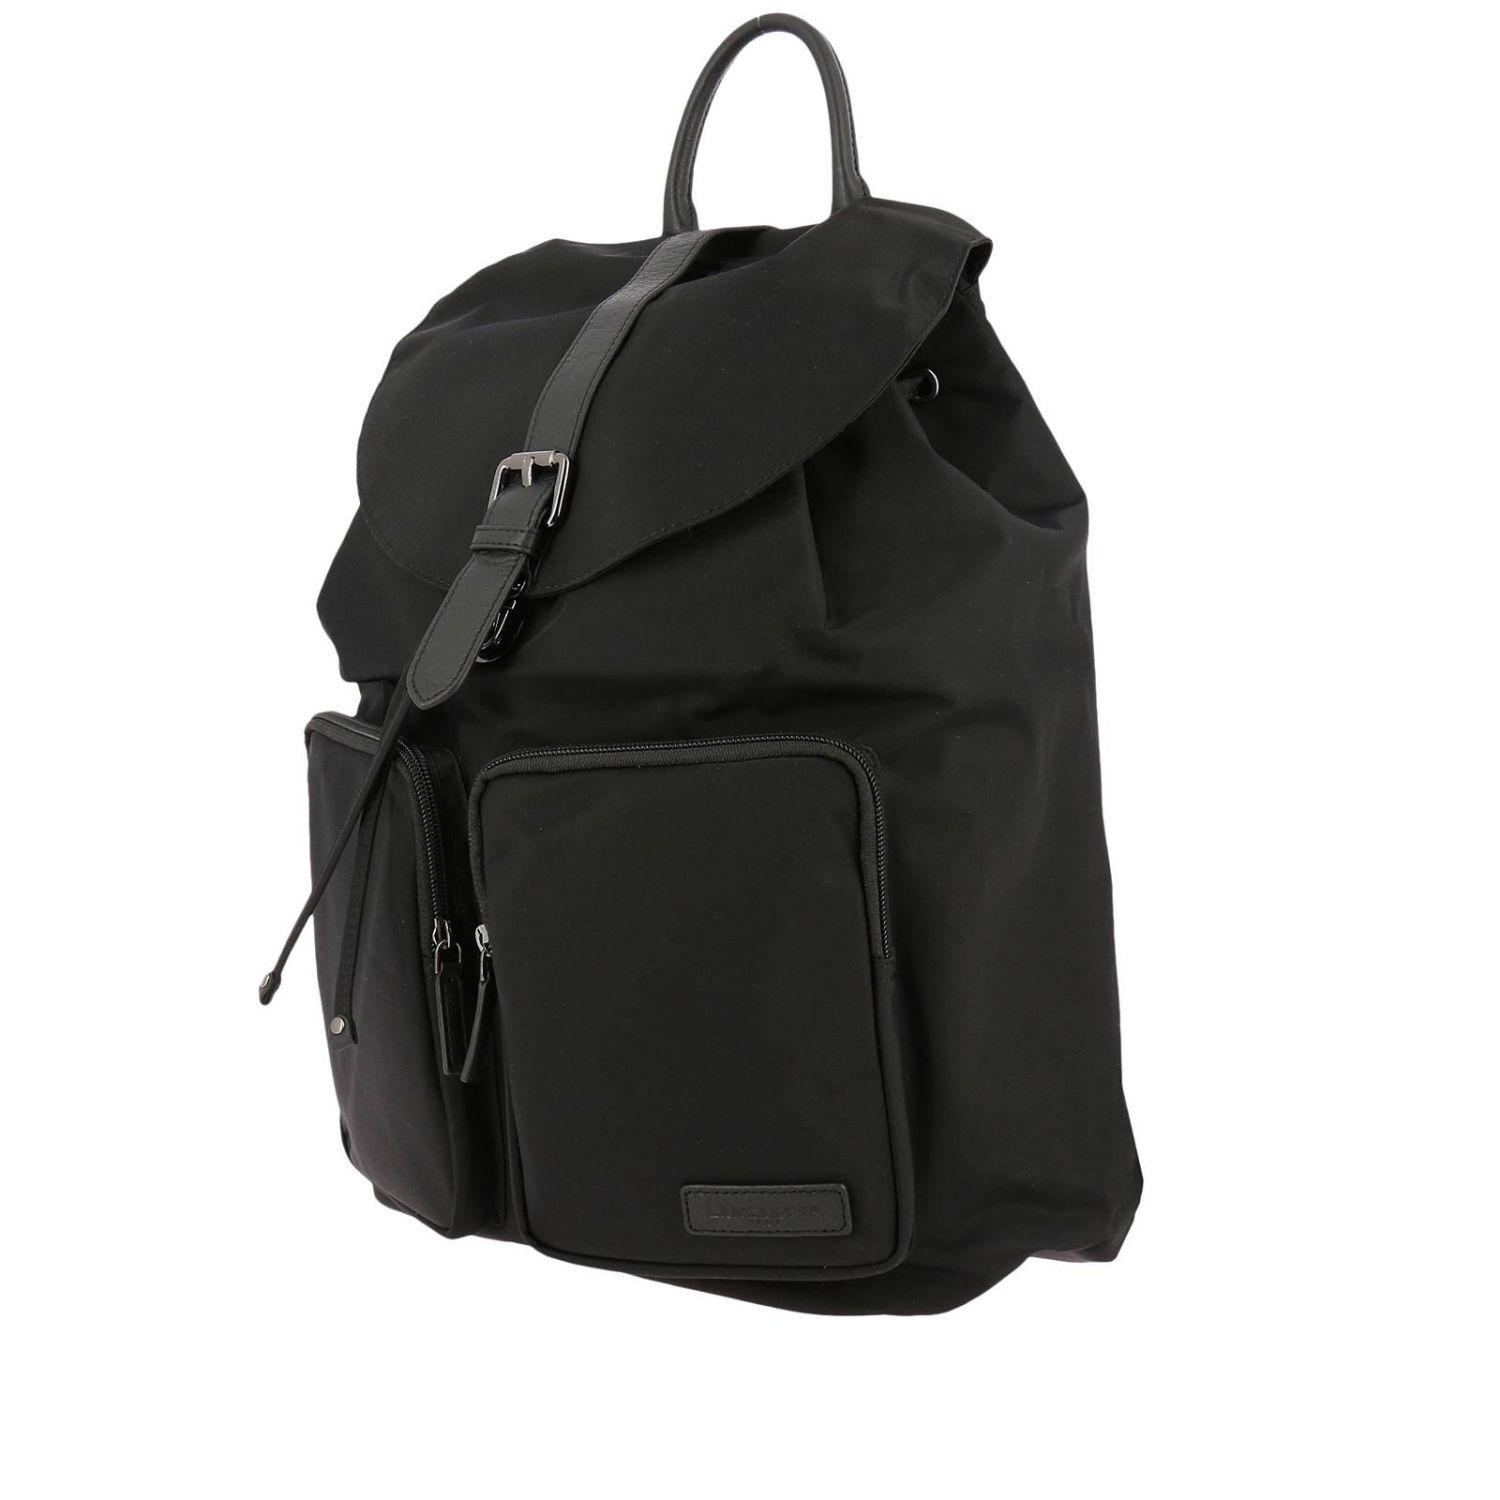 Lancaster Leather Backpack Shoulder Bag Women in Black - Lyst